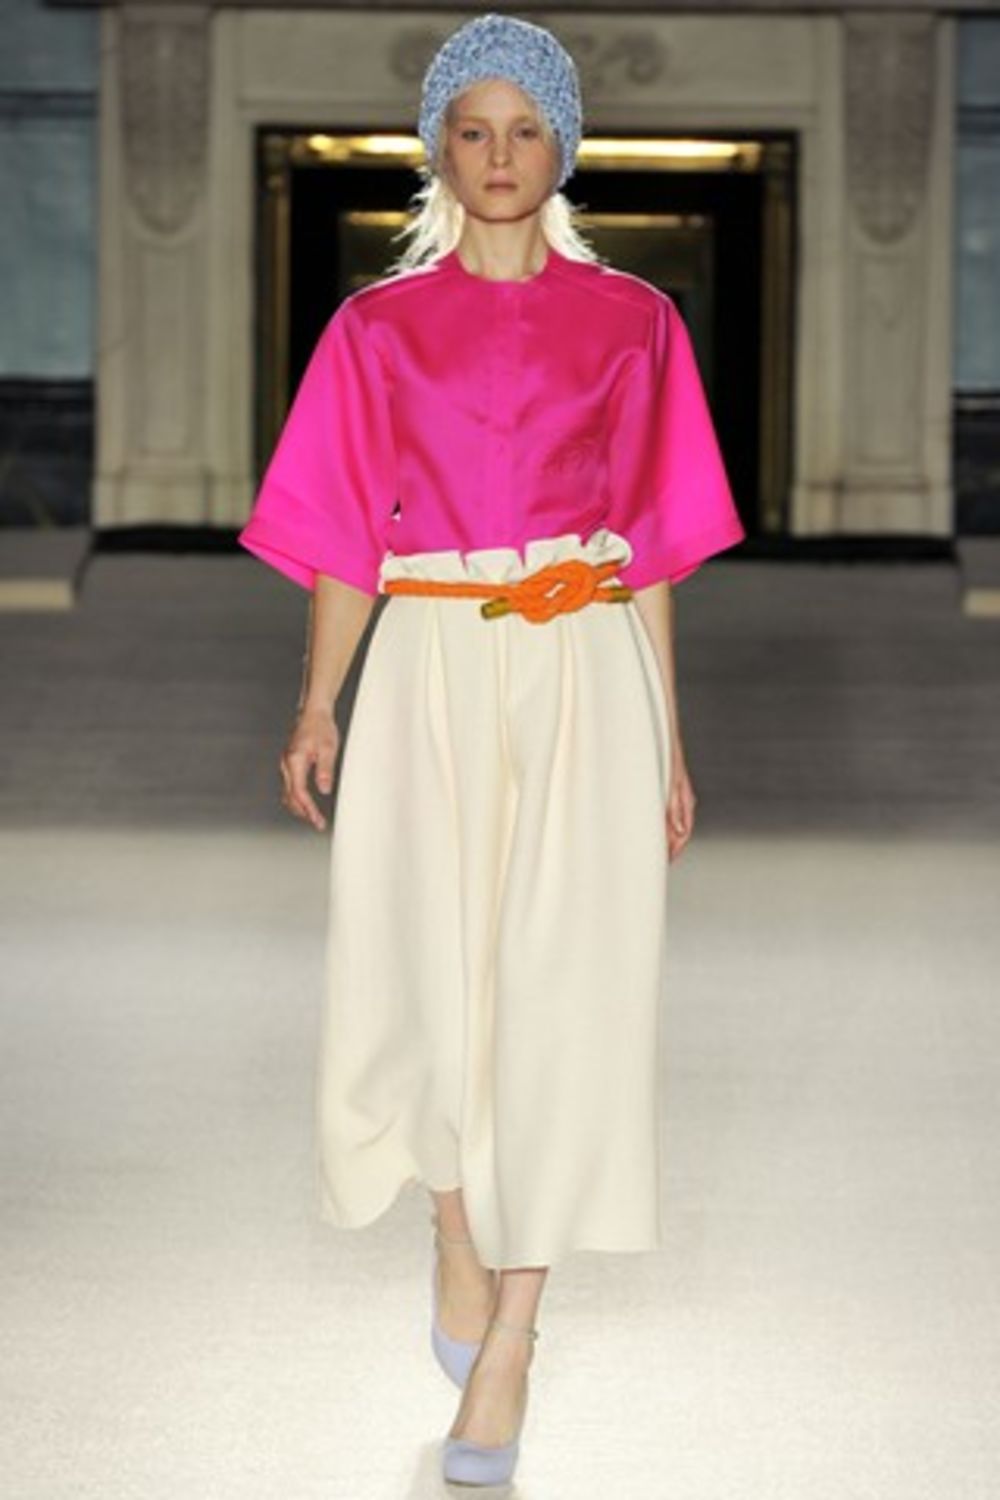 Najnovija kolekcija beogradske dizajnerke Roksande Ilinčić na londonskoj nedelji mode pokupila je samo salve pohvala. Kako piše britanski Vogue, naša kreatorka do te mere je fascinirala Anu Vintur da ona trenutno sa njom pregovara oko toga da se deo ove kolekc